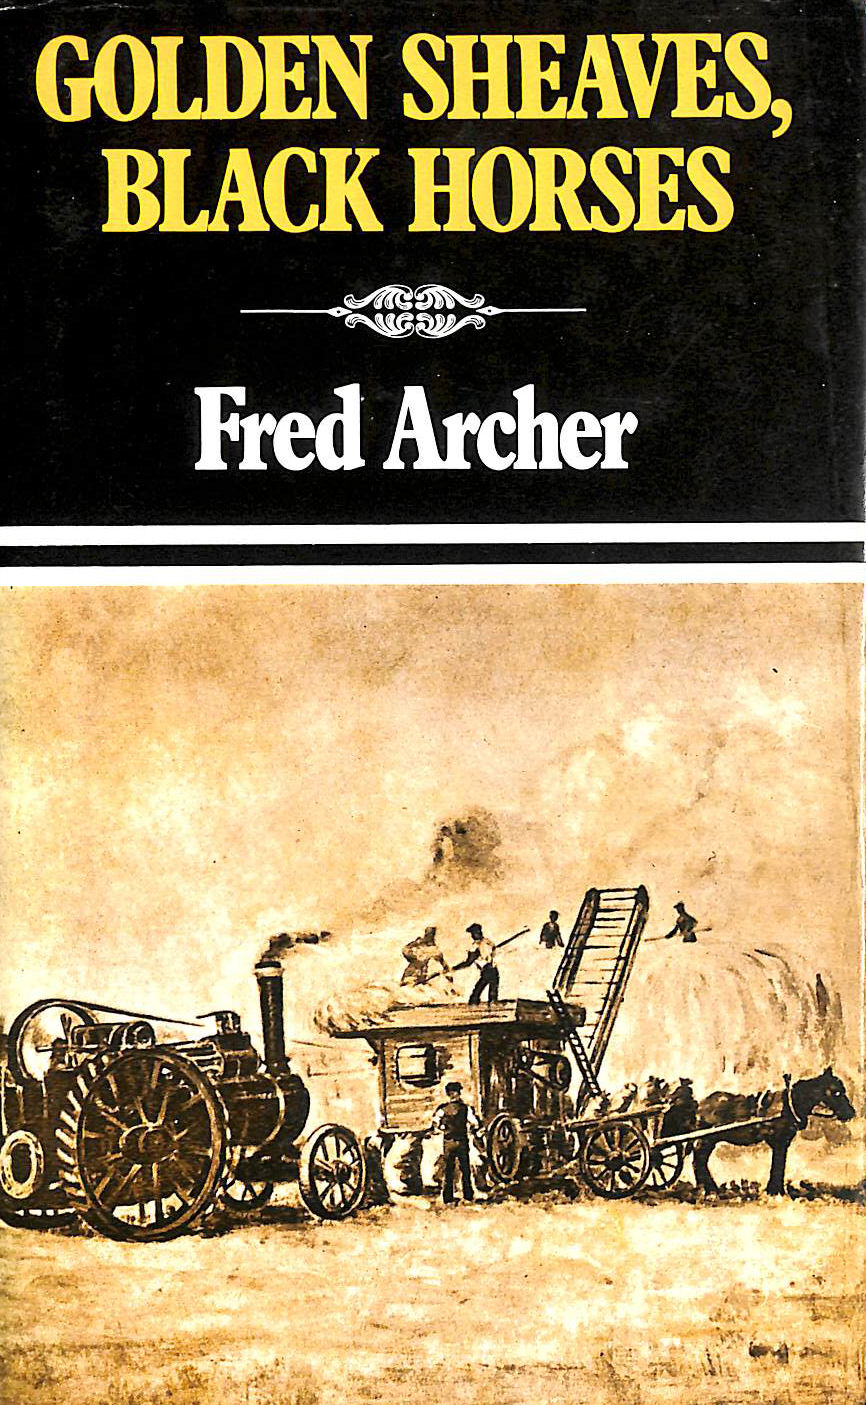 FRED ARCHER - Golden Sheaves, Black Horses